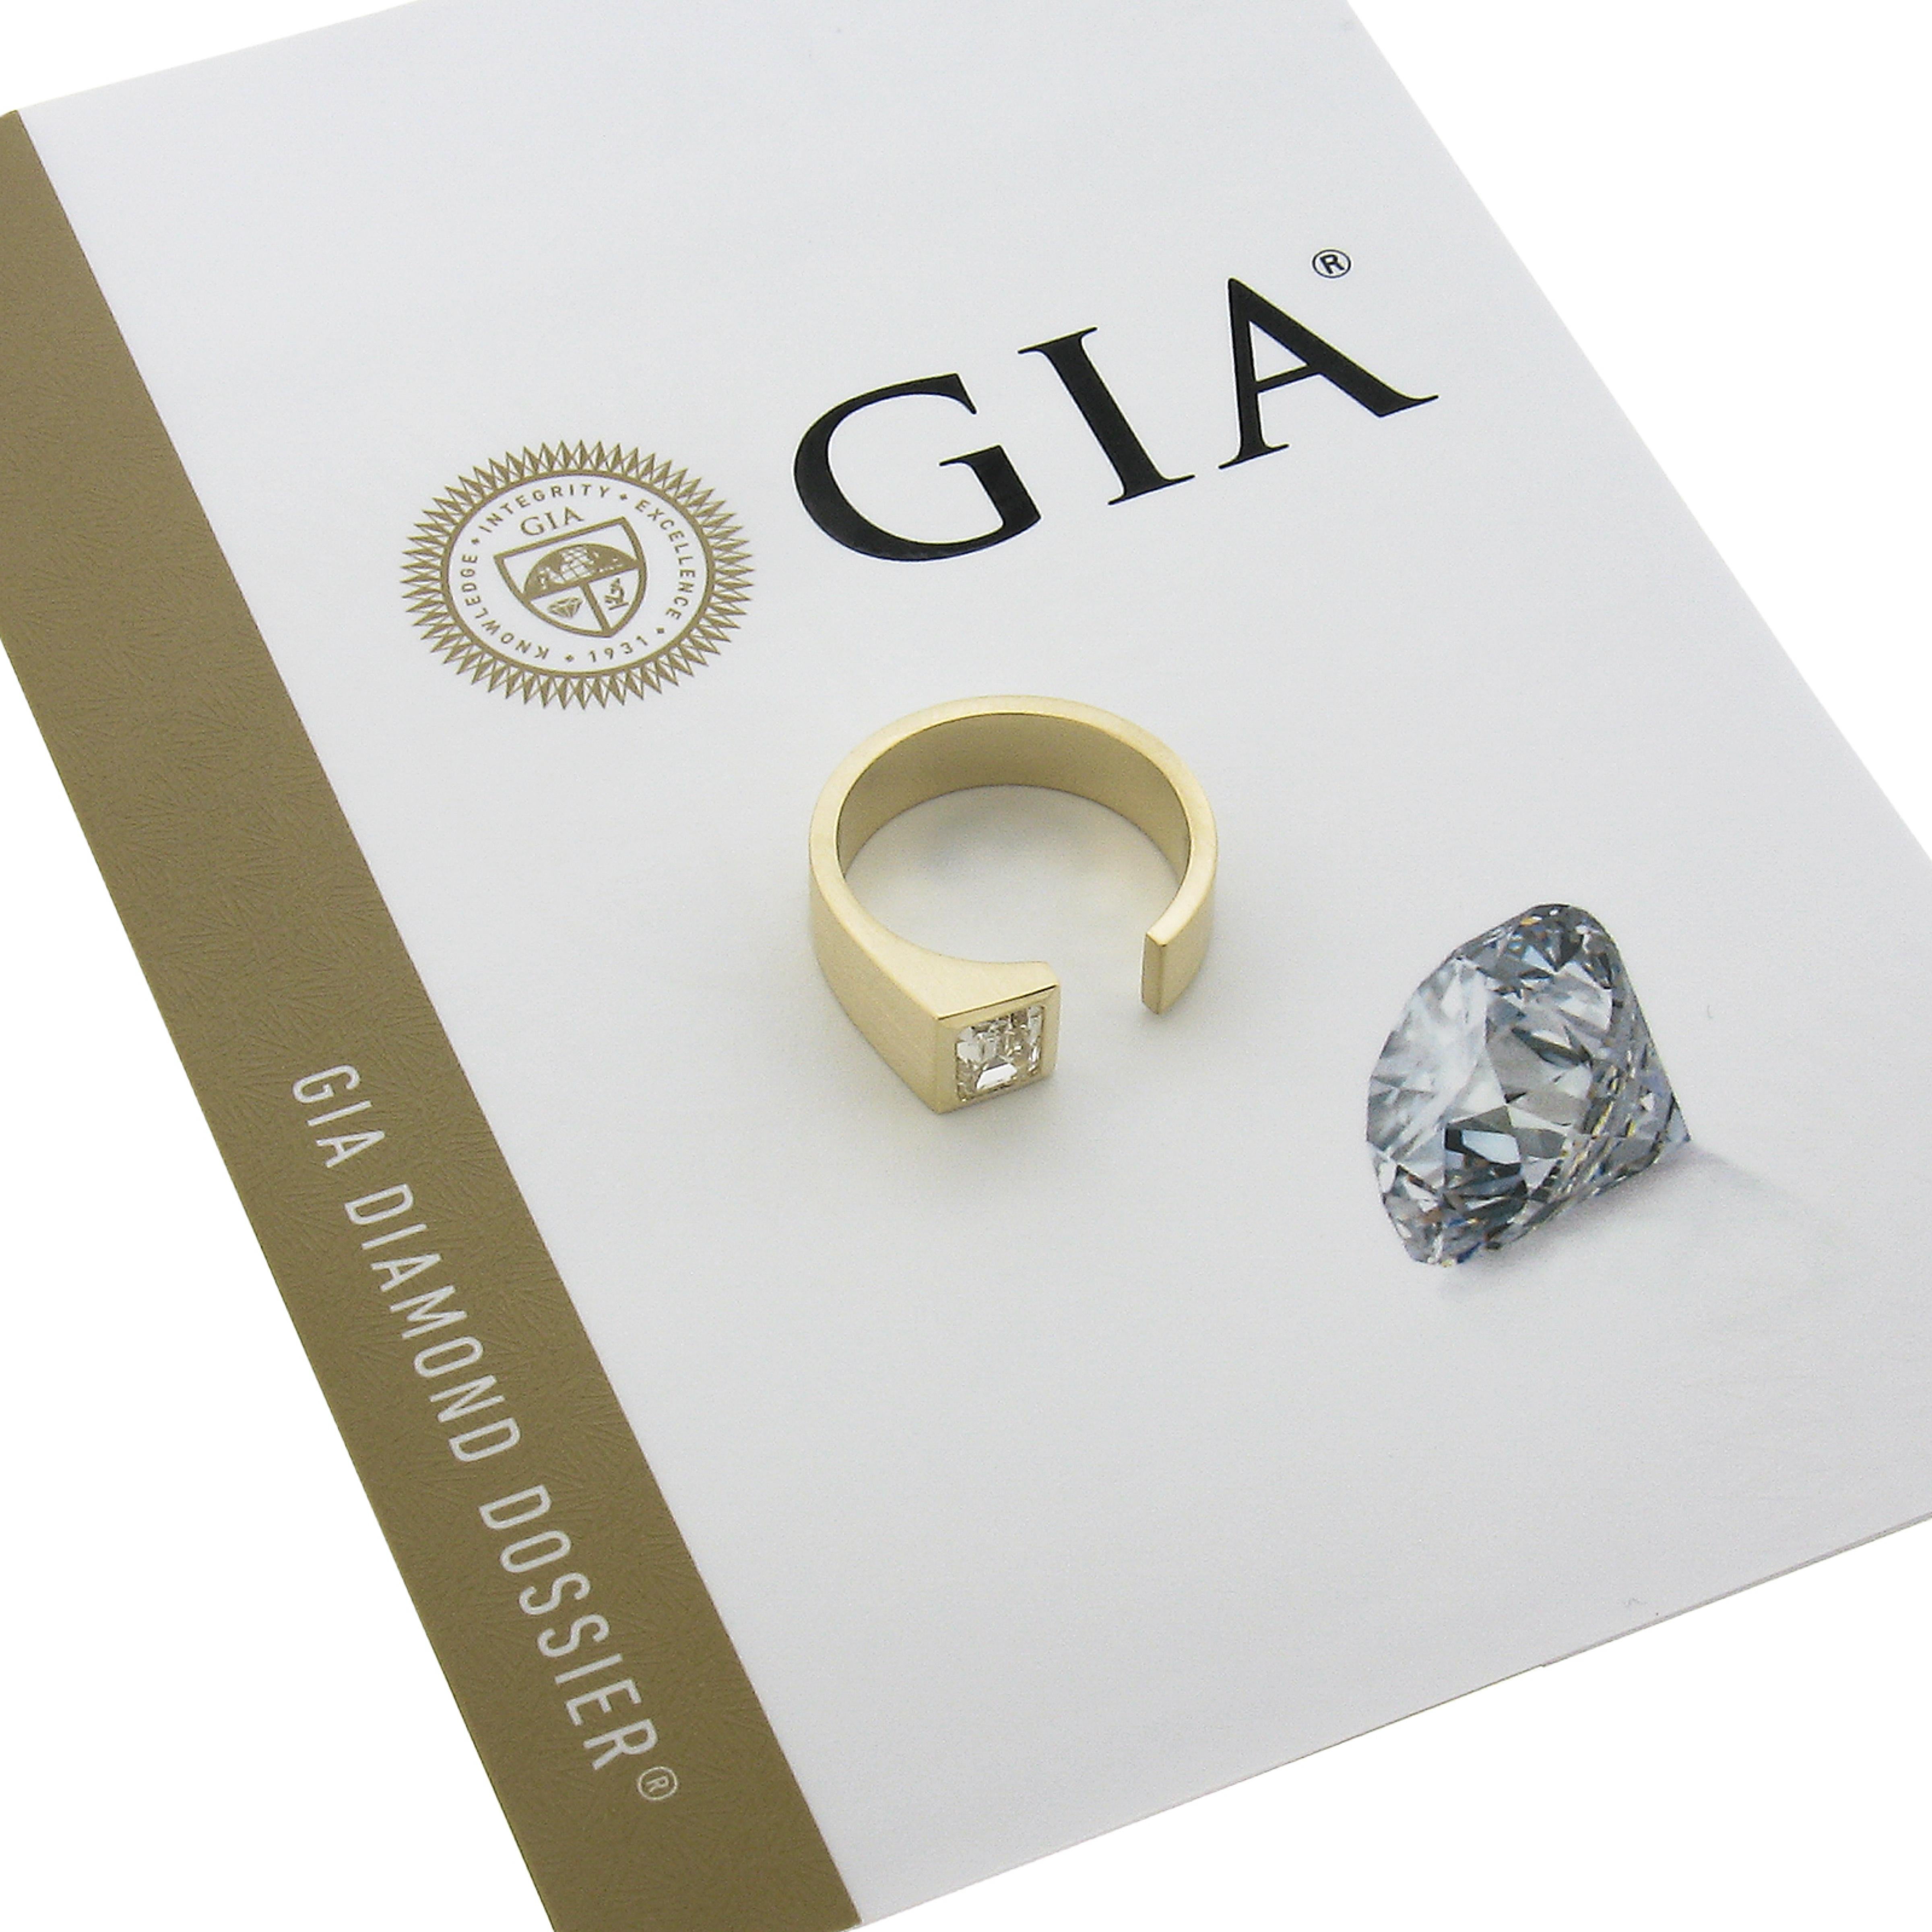 --Pierre(s) :...
(1) Diamant naturel authentique - taille émeraude - serti bruni - couleur K - pureté SI2 - 0,91ct (exact - certifié) ** Voir les détails de la certification ci-dessous pour des informations complètes **.
Poids total en carats :	0,91